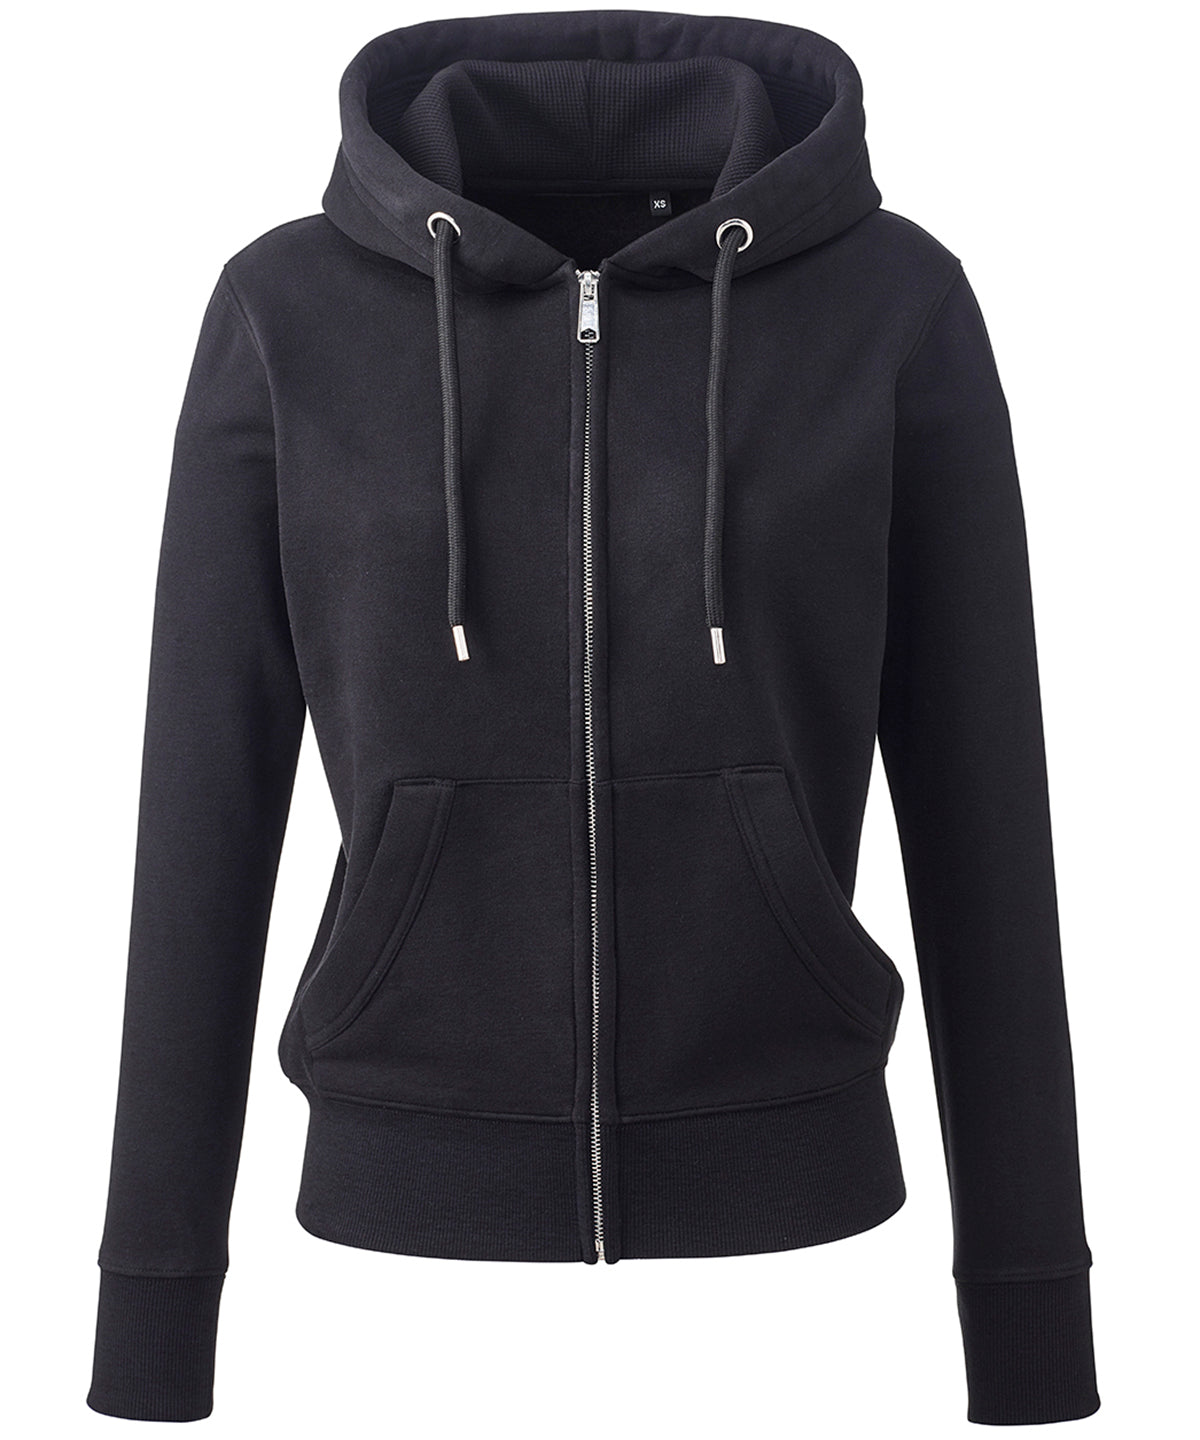 Personalised Hoodies - Black Anthem Women's Anthem full-zip hoodie